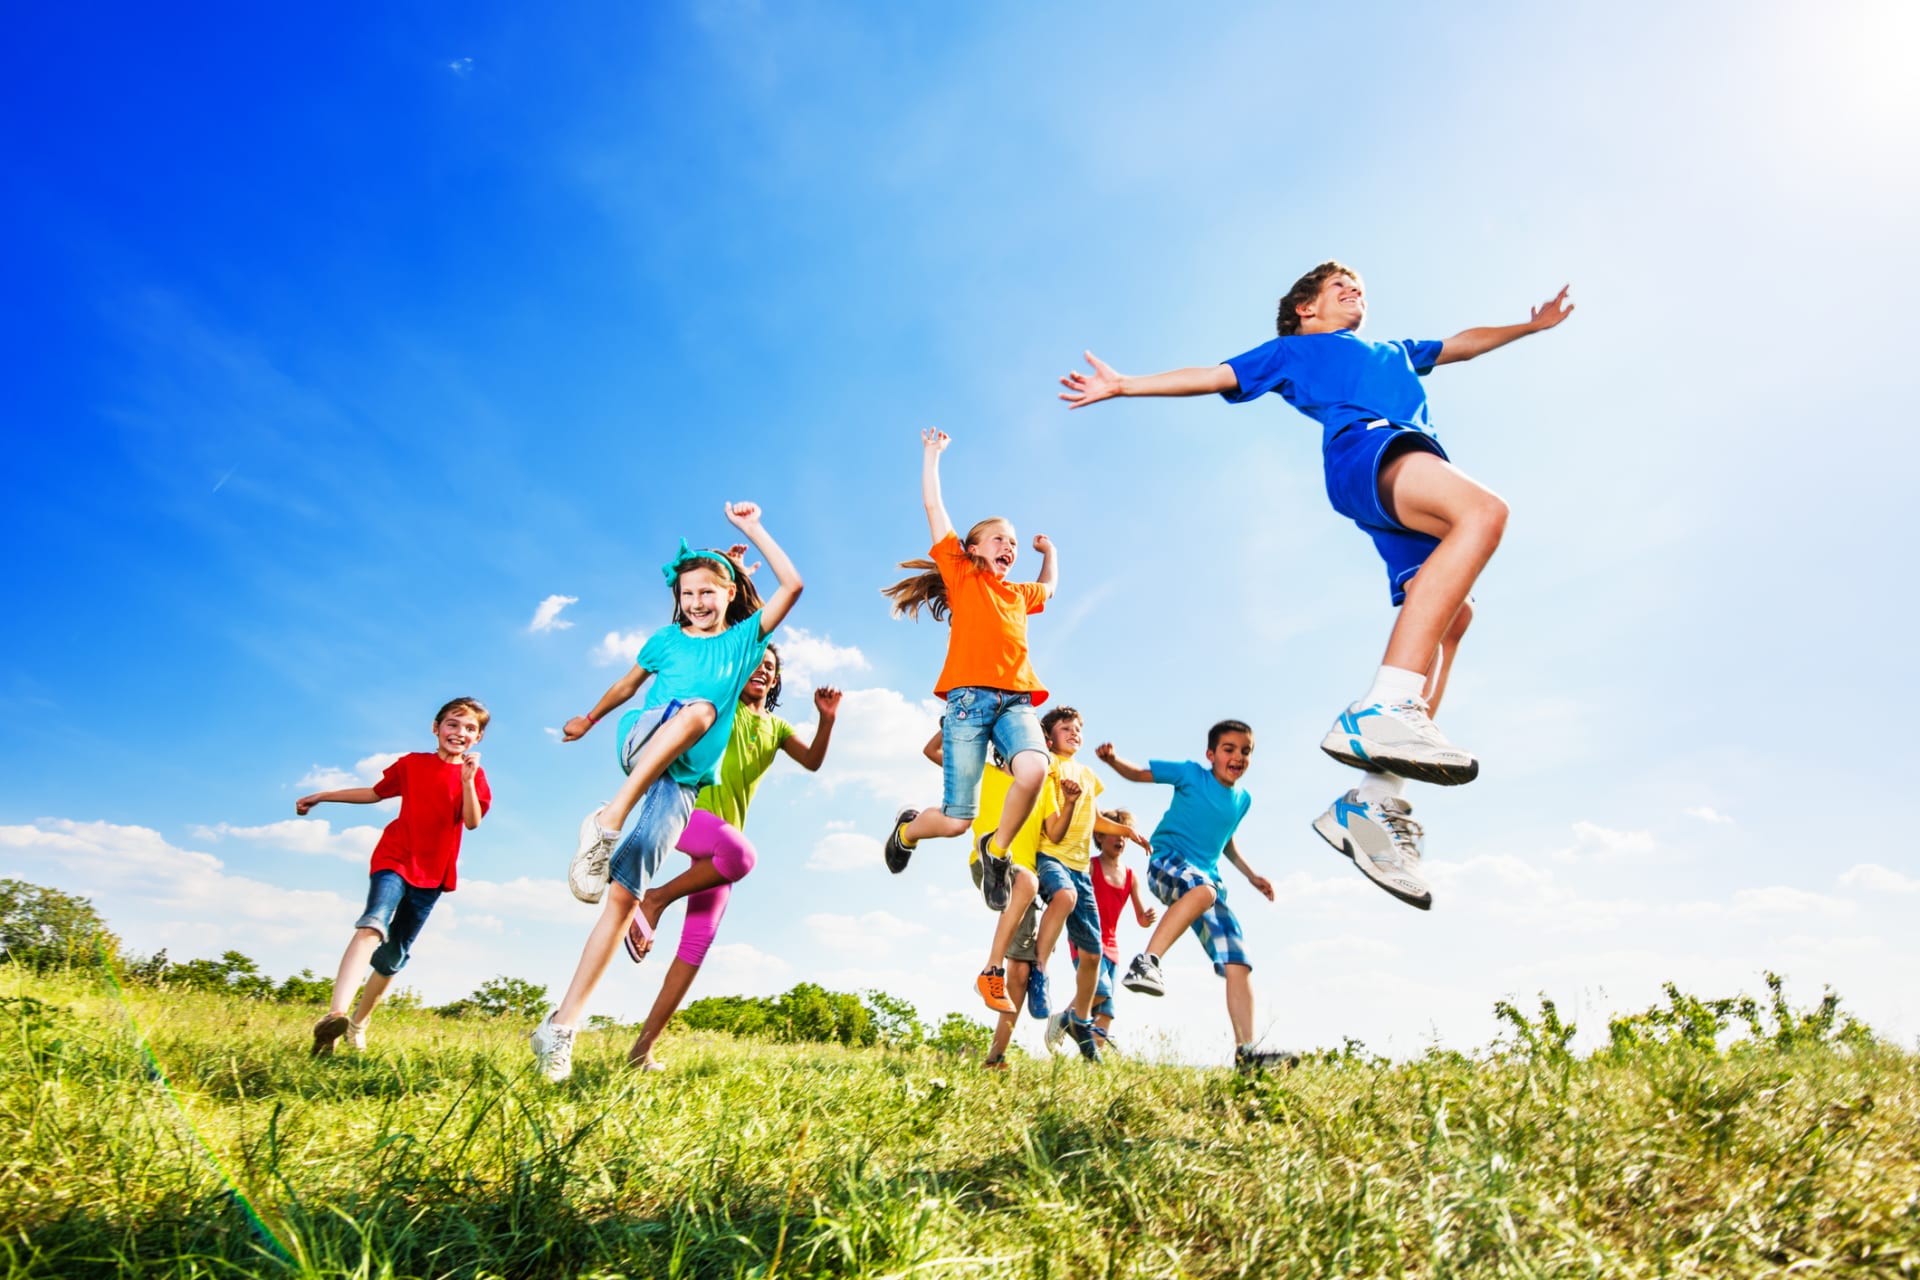 Prázdniny se blíží! 5 tipů na letní dobrodružství, které bude děti bavit